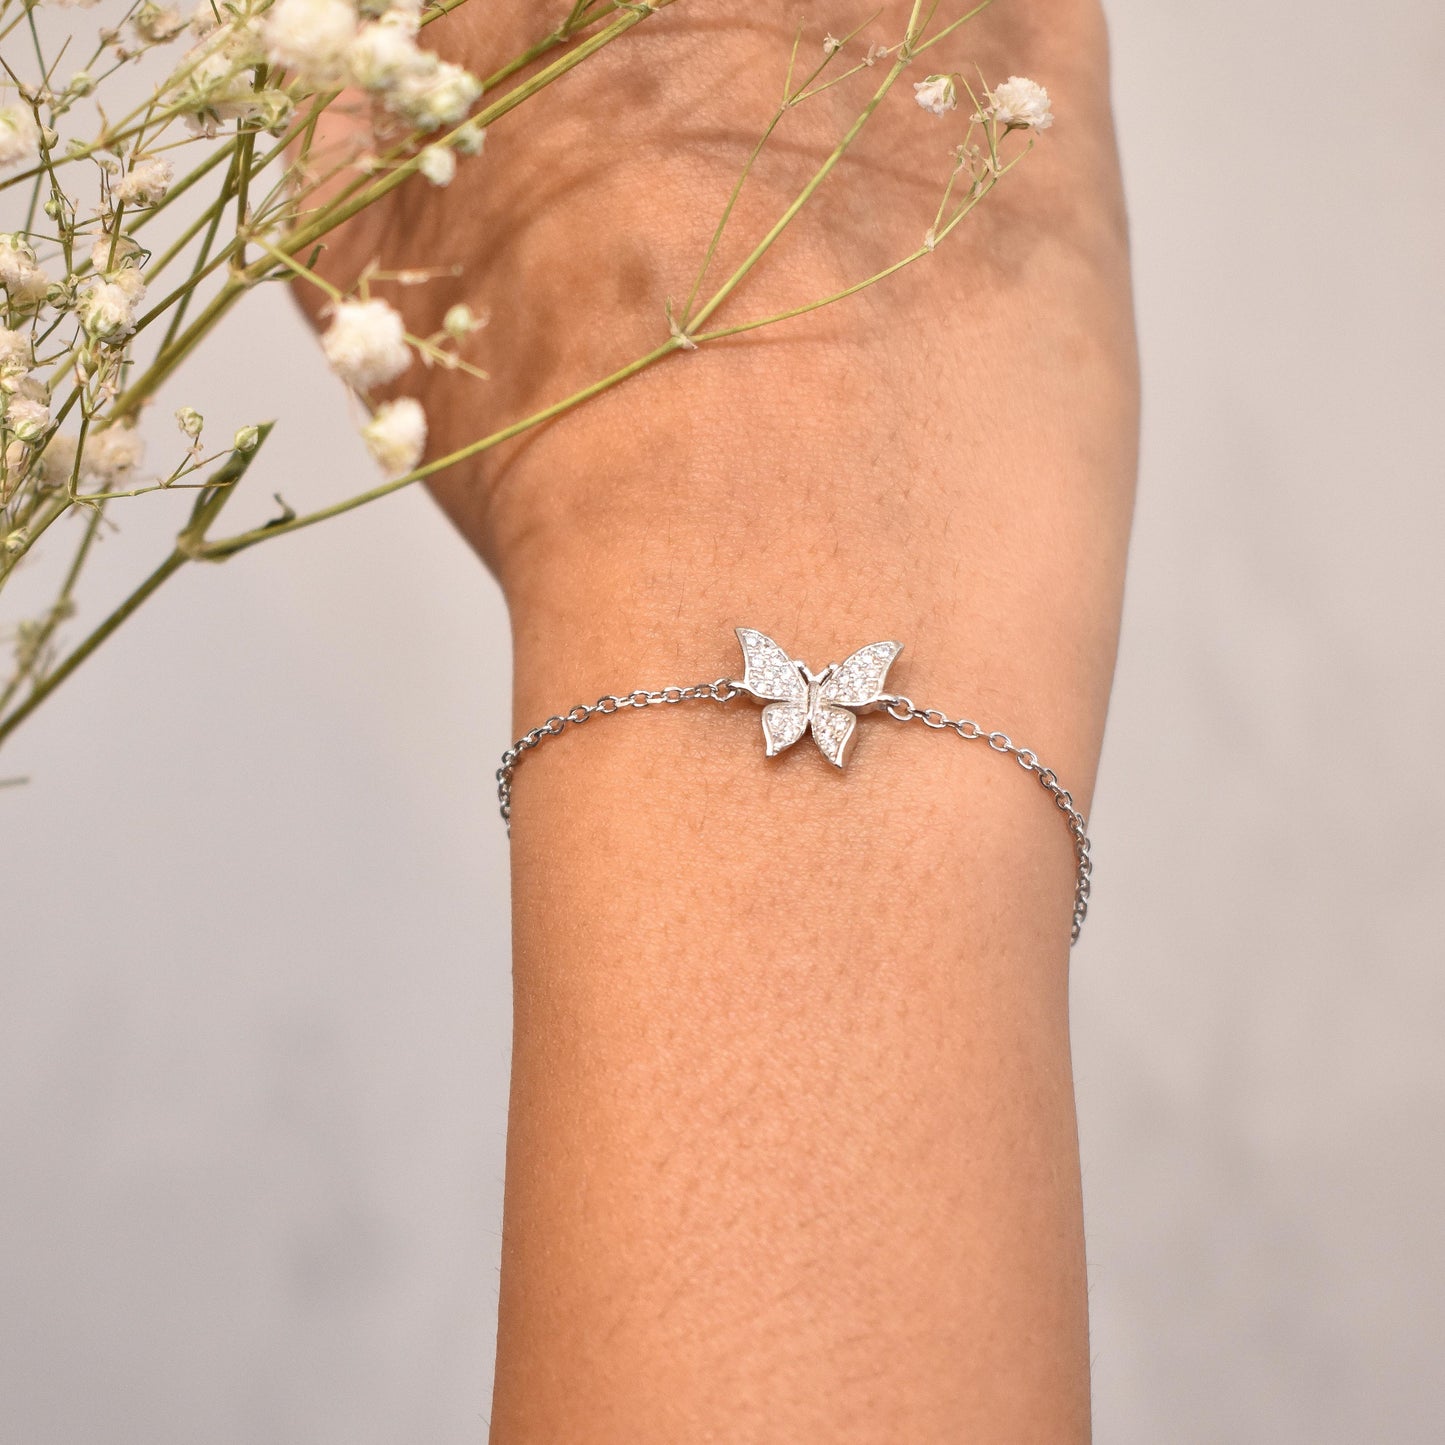 Butterfly chain bracelet - Charm Butterfly Bracelet, Adjustable Chain  Bracelets, Minimalist Jewelry for Women (3pc butterfly bracelet set) : Buy  Online at Best Price in KSA - Souq is now Amazon.sa: Fashion